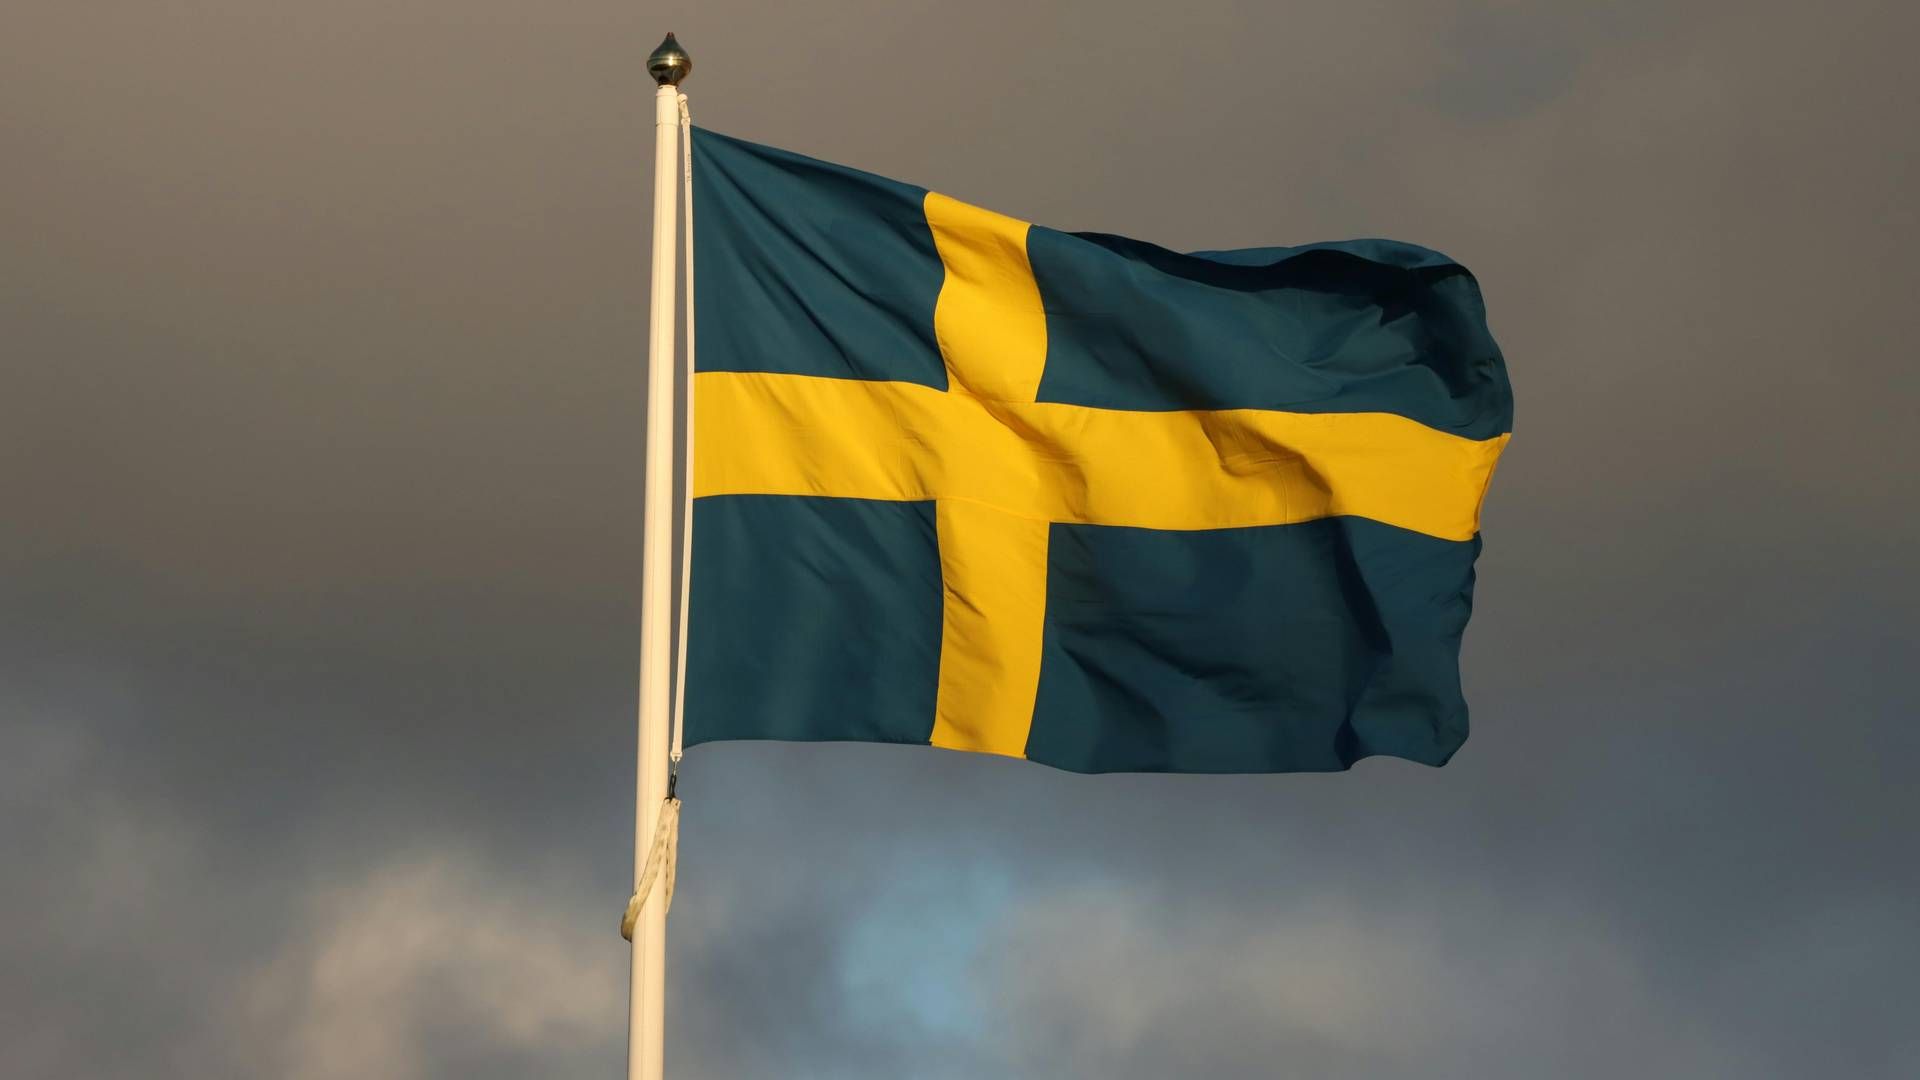 Sverige er blevet et vigtigere marked for Nrep, lød det sidste år fra Nrep-direktør Jani Nokkanen. | Foto: Pexels